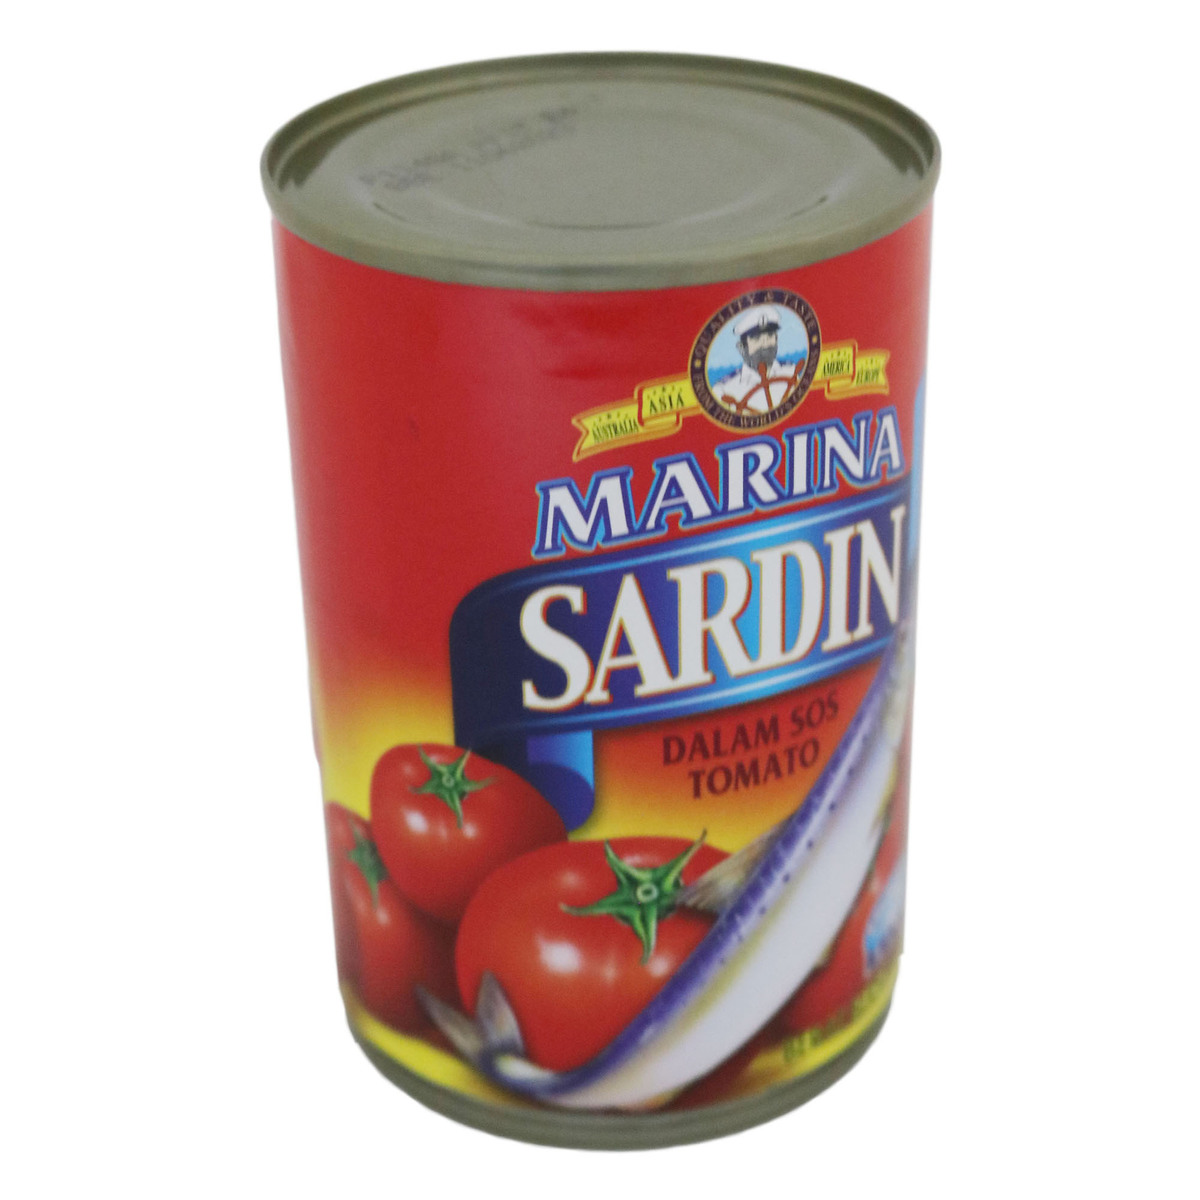 Marina sardine